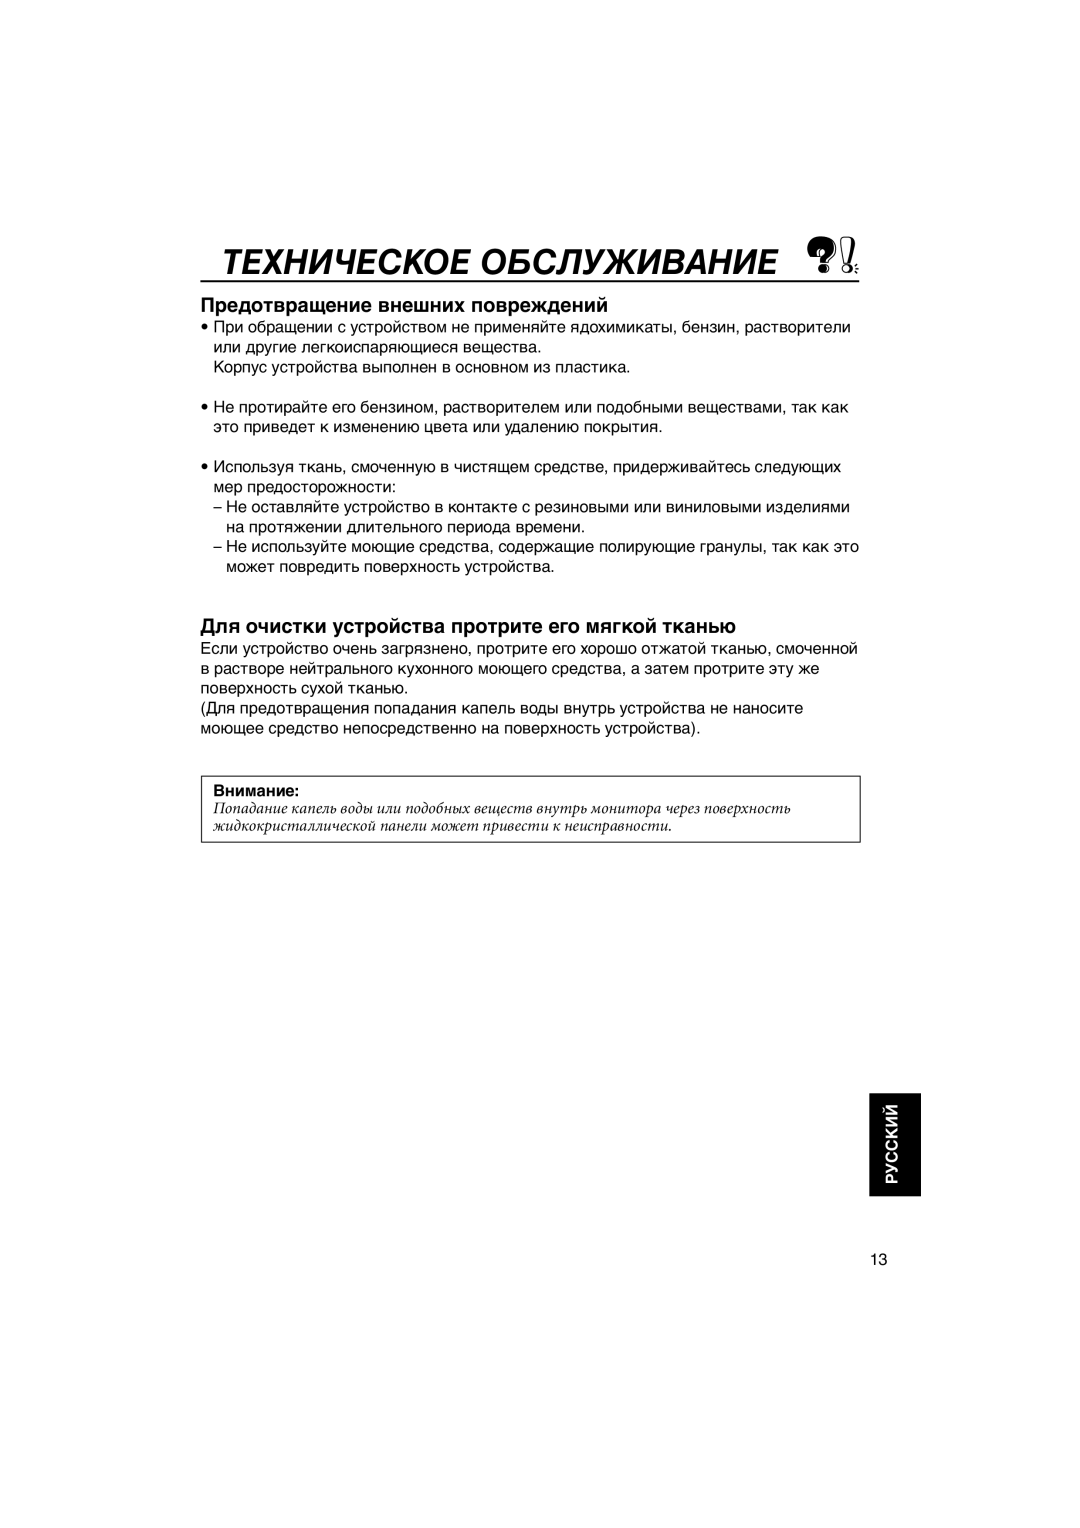 JVC KV-MH6500 manual Техническое Обслуживание, Предотвращение внешних повреждений, Внимание, Руcckий 